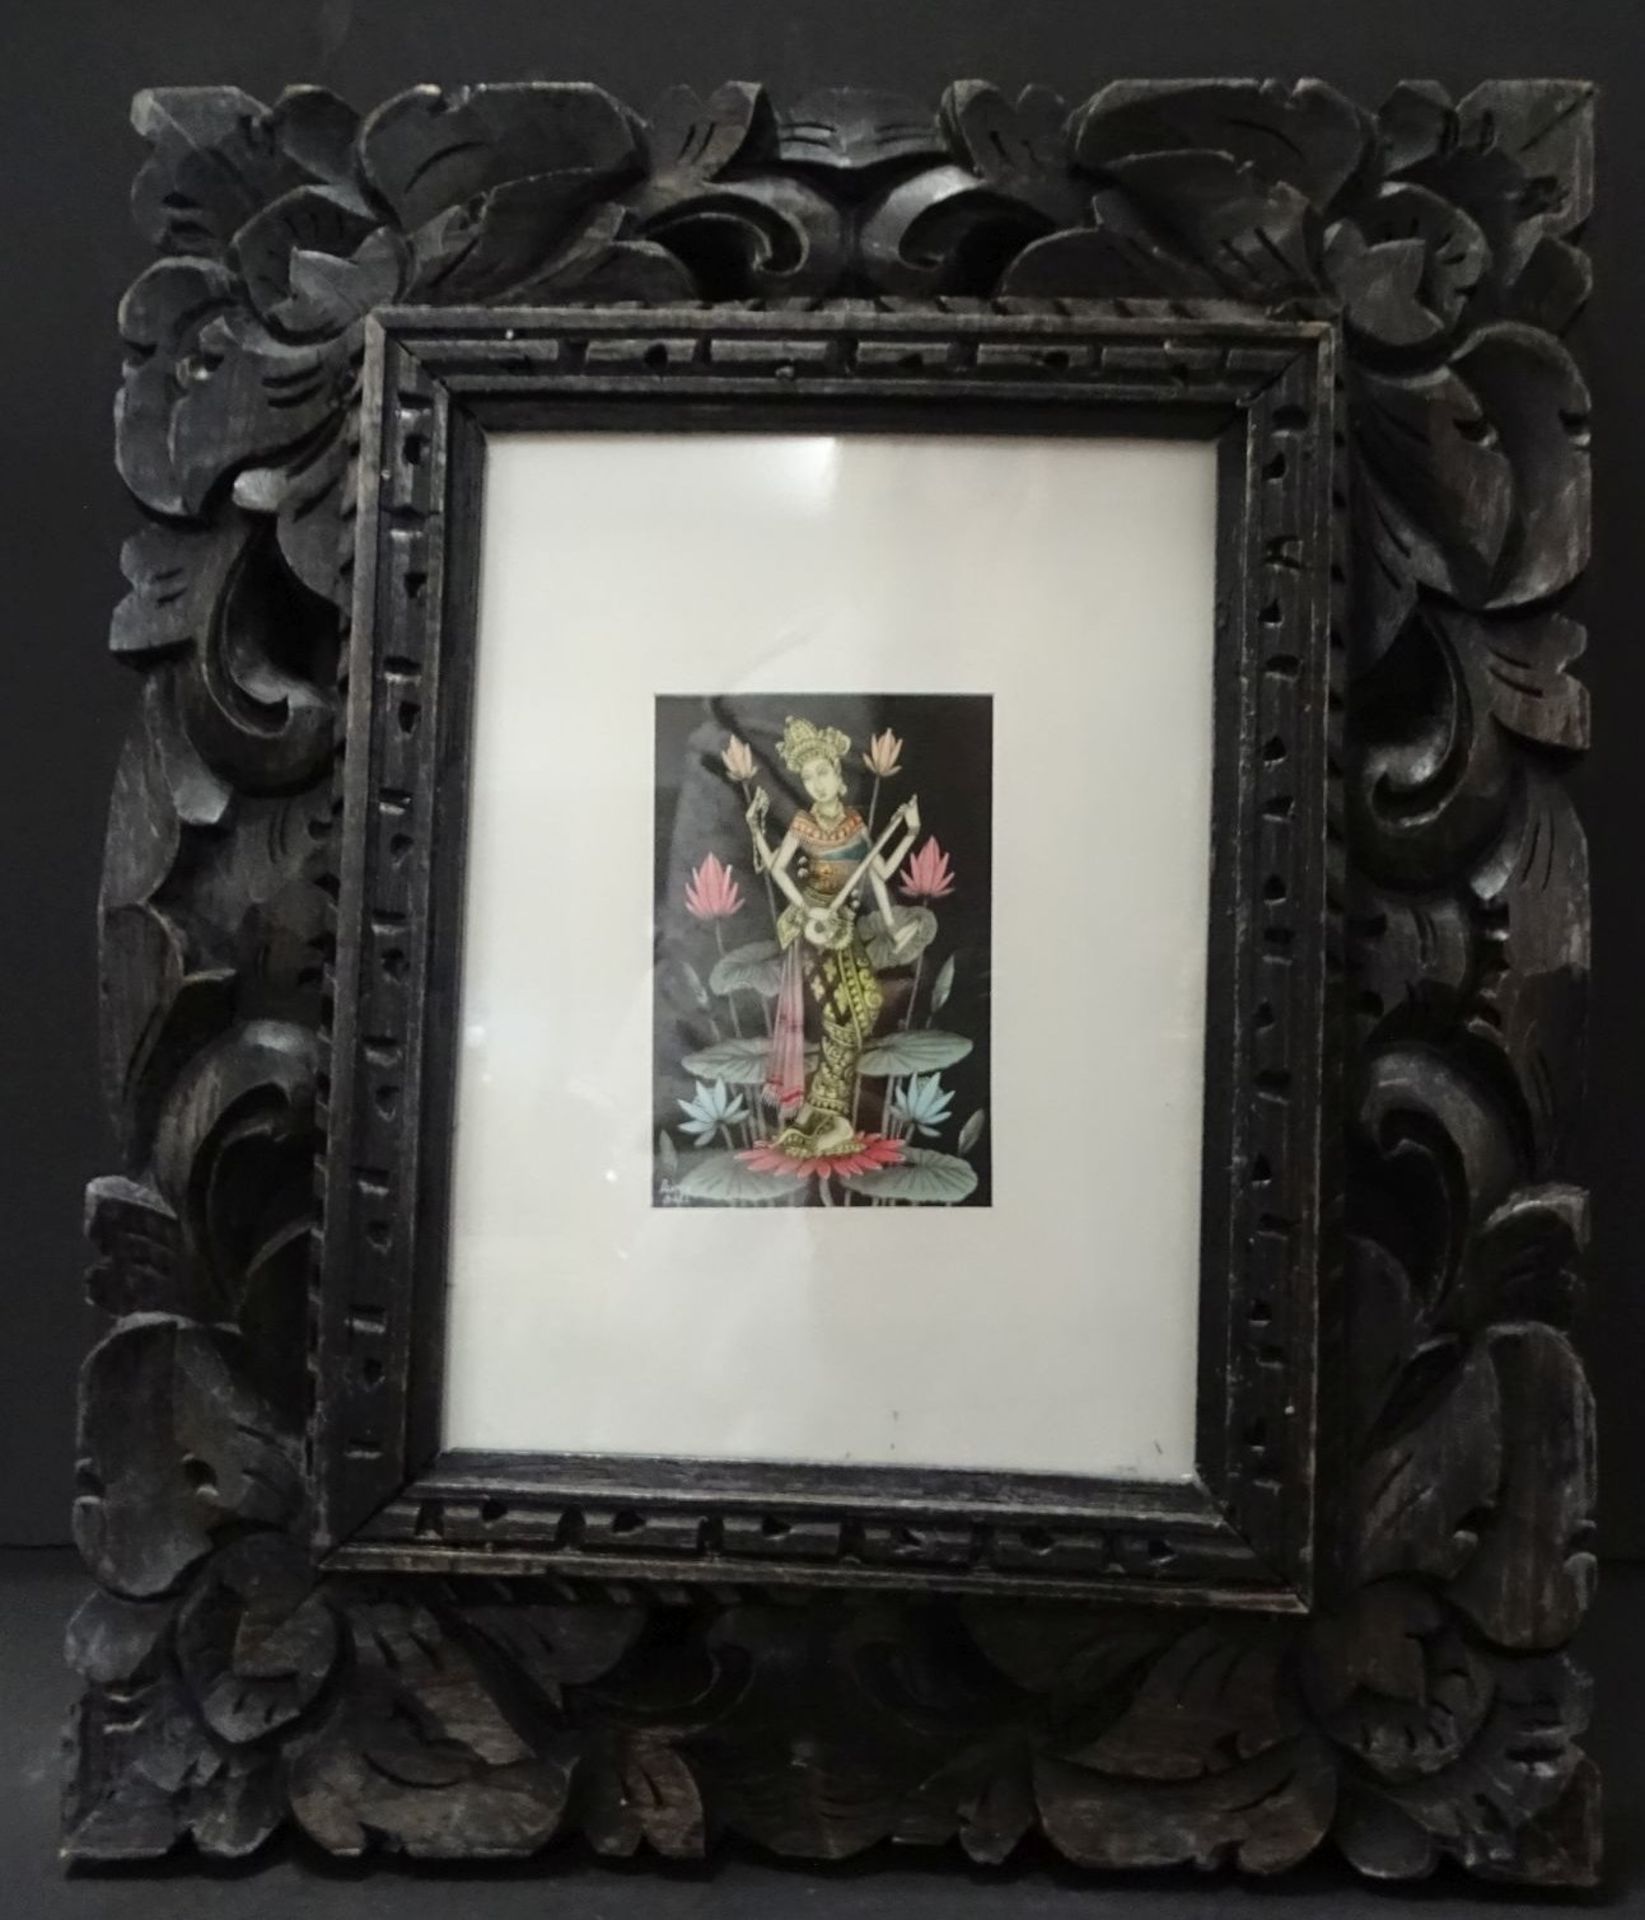 Miniaturbild, 4 armige Göttin mit Sitar, 9x6 cm, Bali, in geschnitzten Rahmen/Glas, RG 30x25 c - Bild 4 aus 6